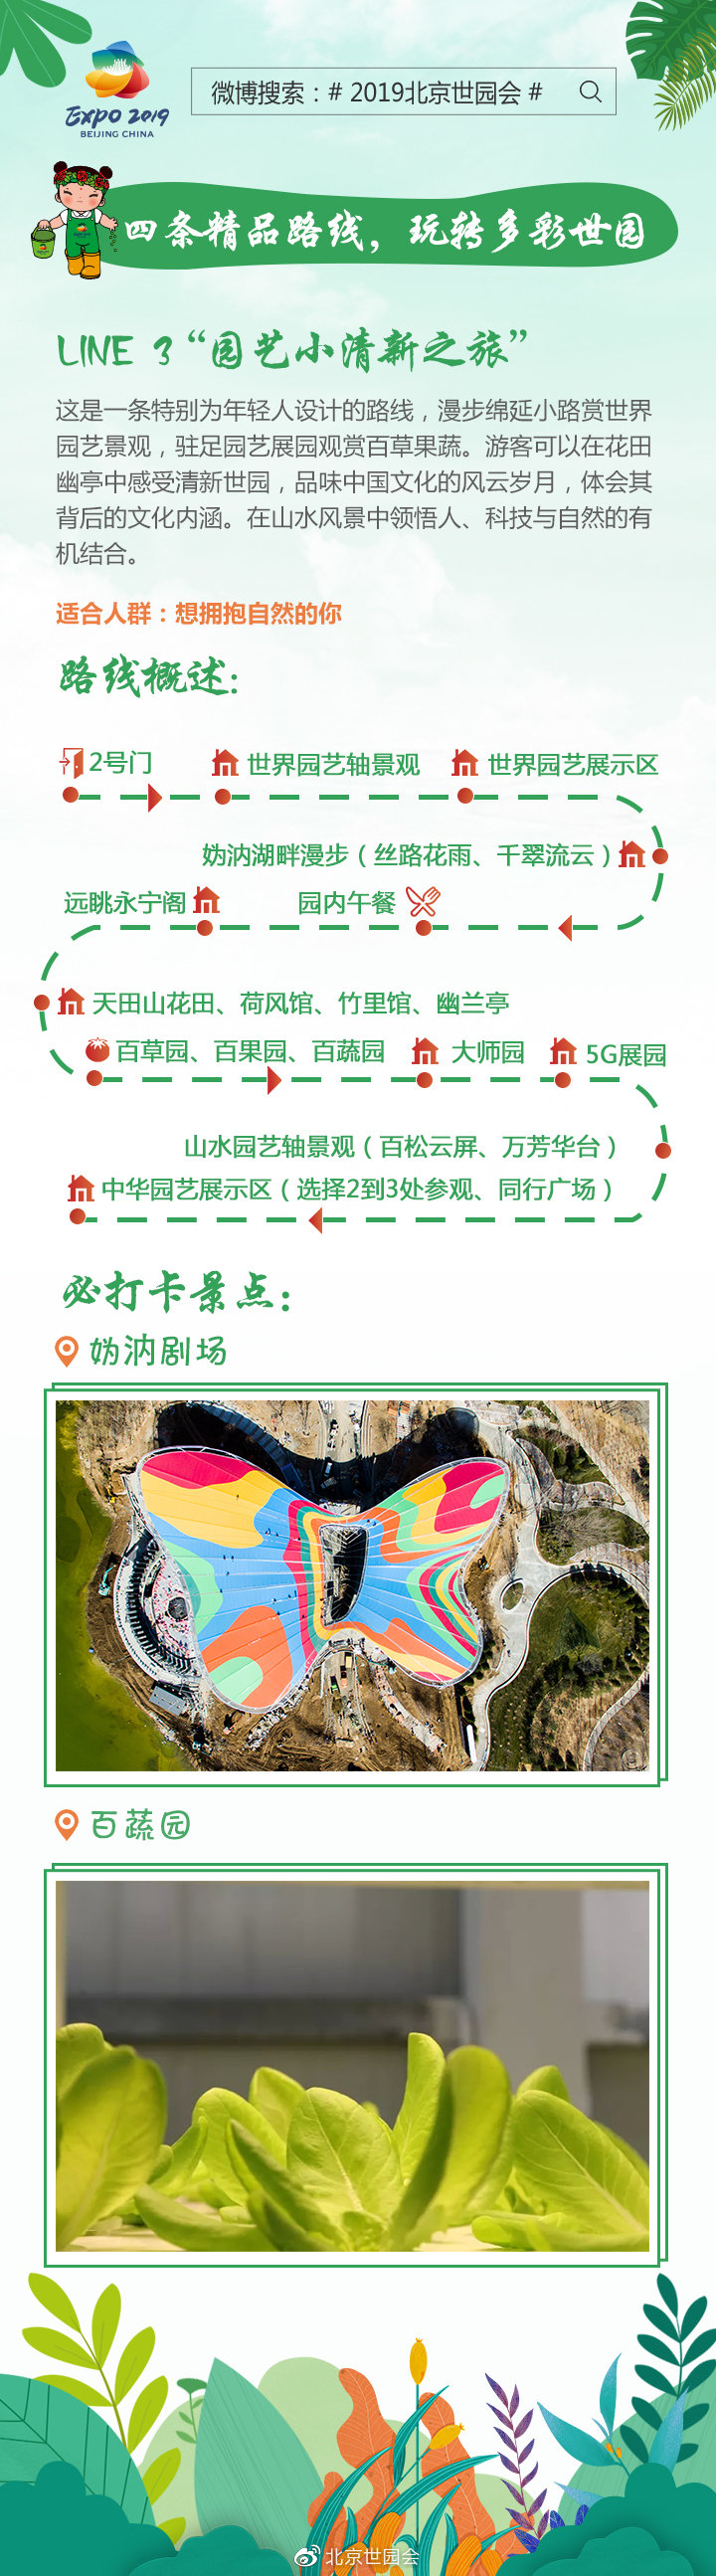 2019北京世园会四条精品游玩路线及必打卡景点[墙根网]